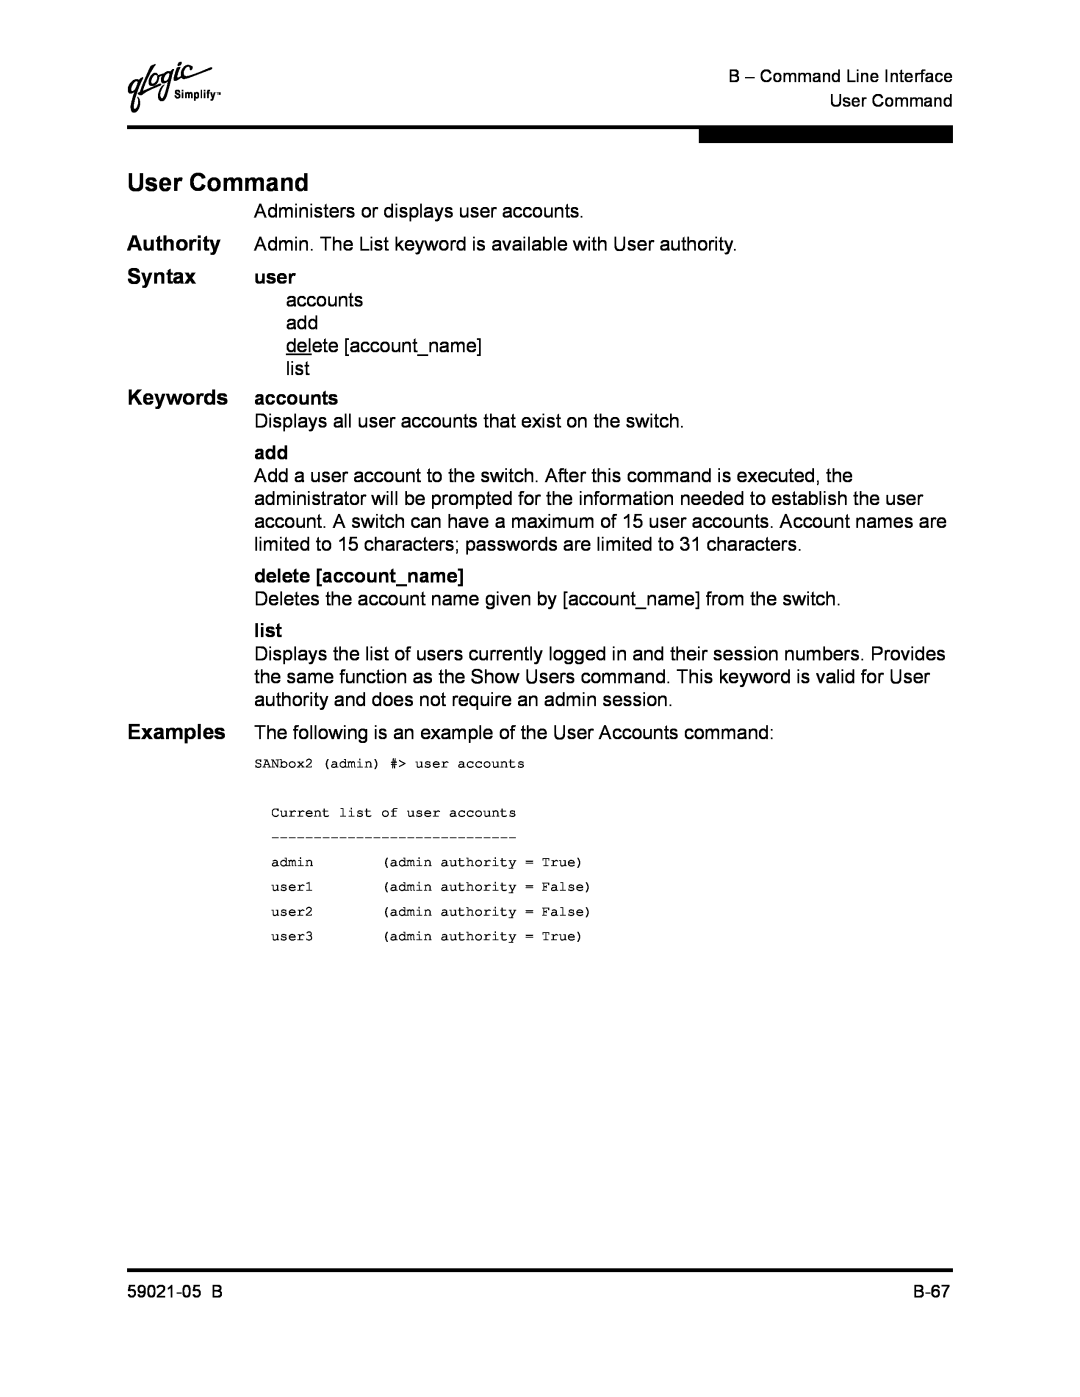 Q-Logic 59021-05 B manual User Command, Keywords accounts 